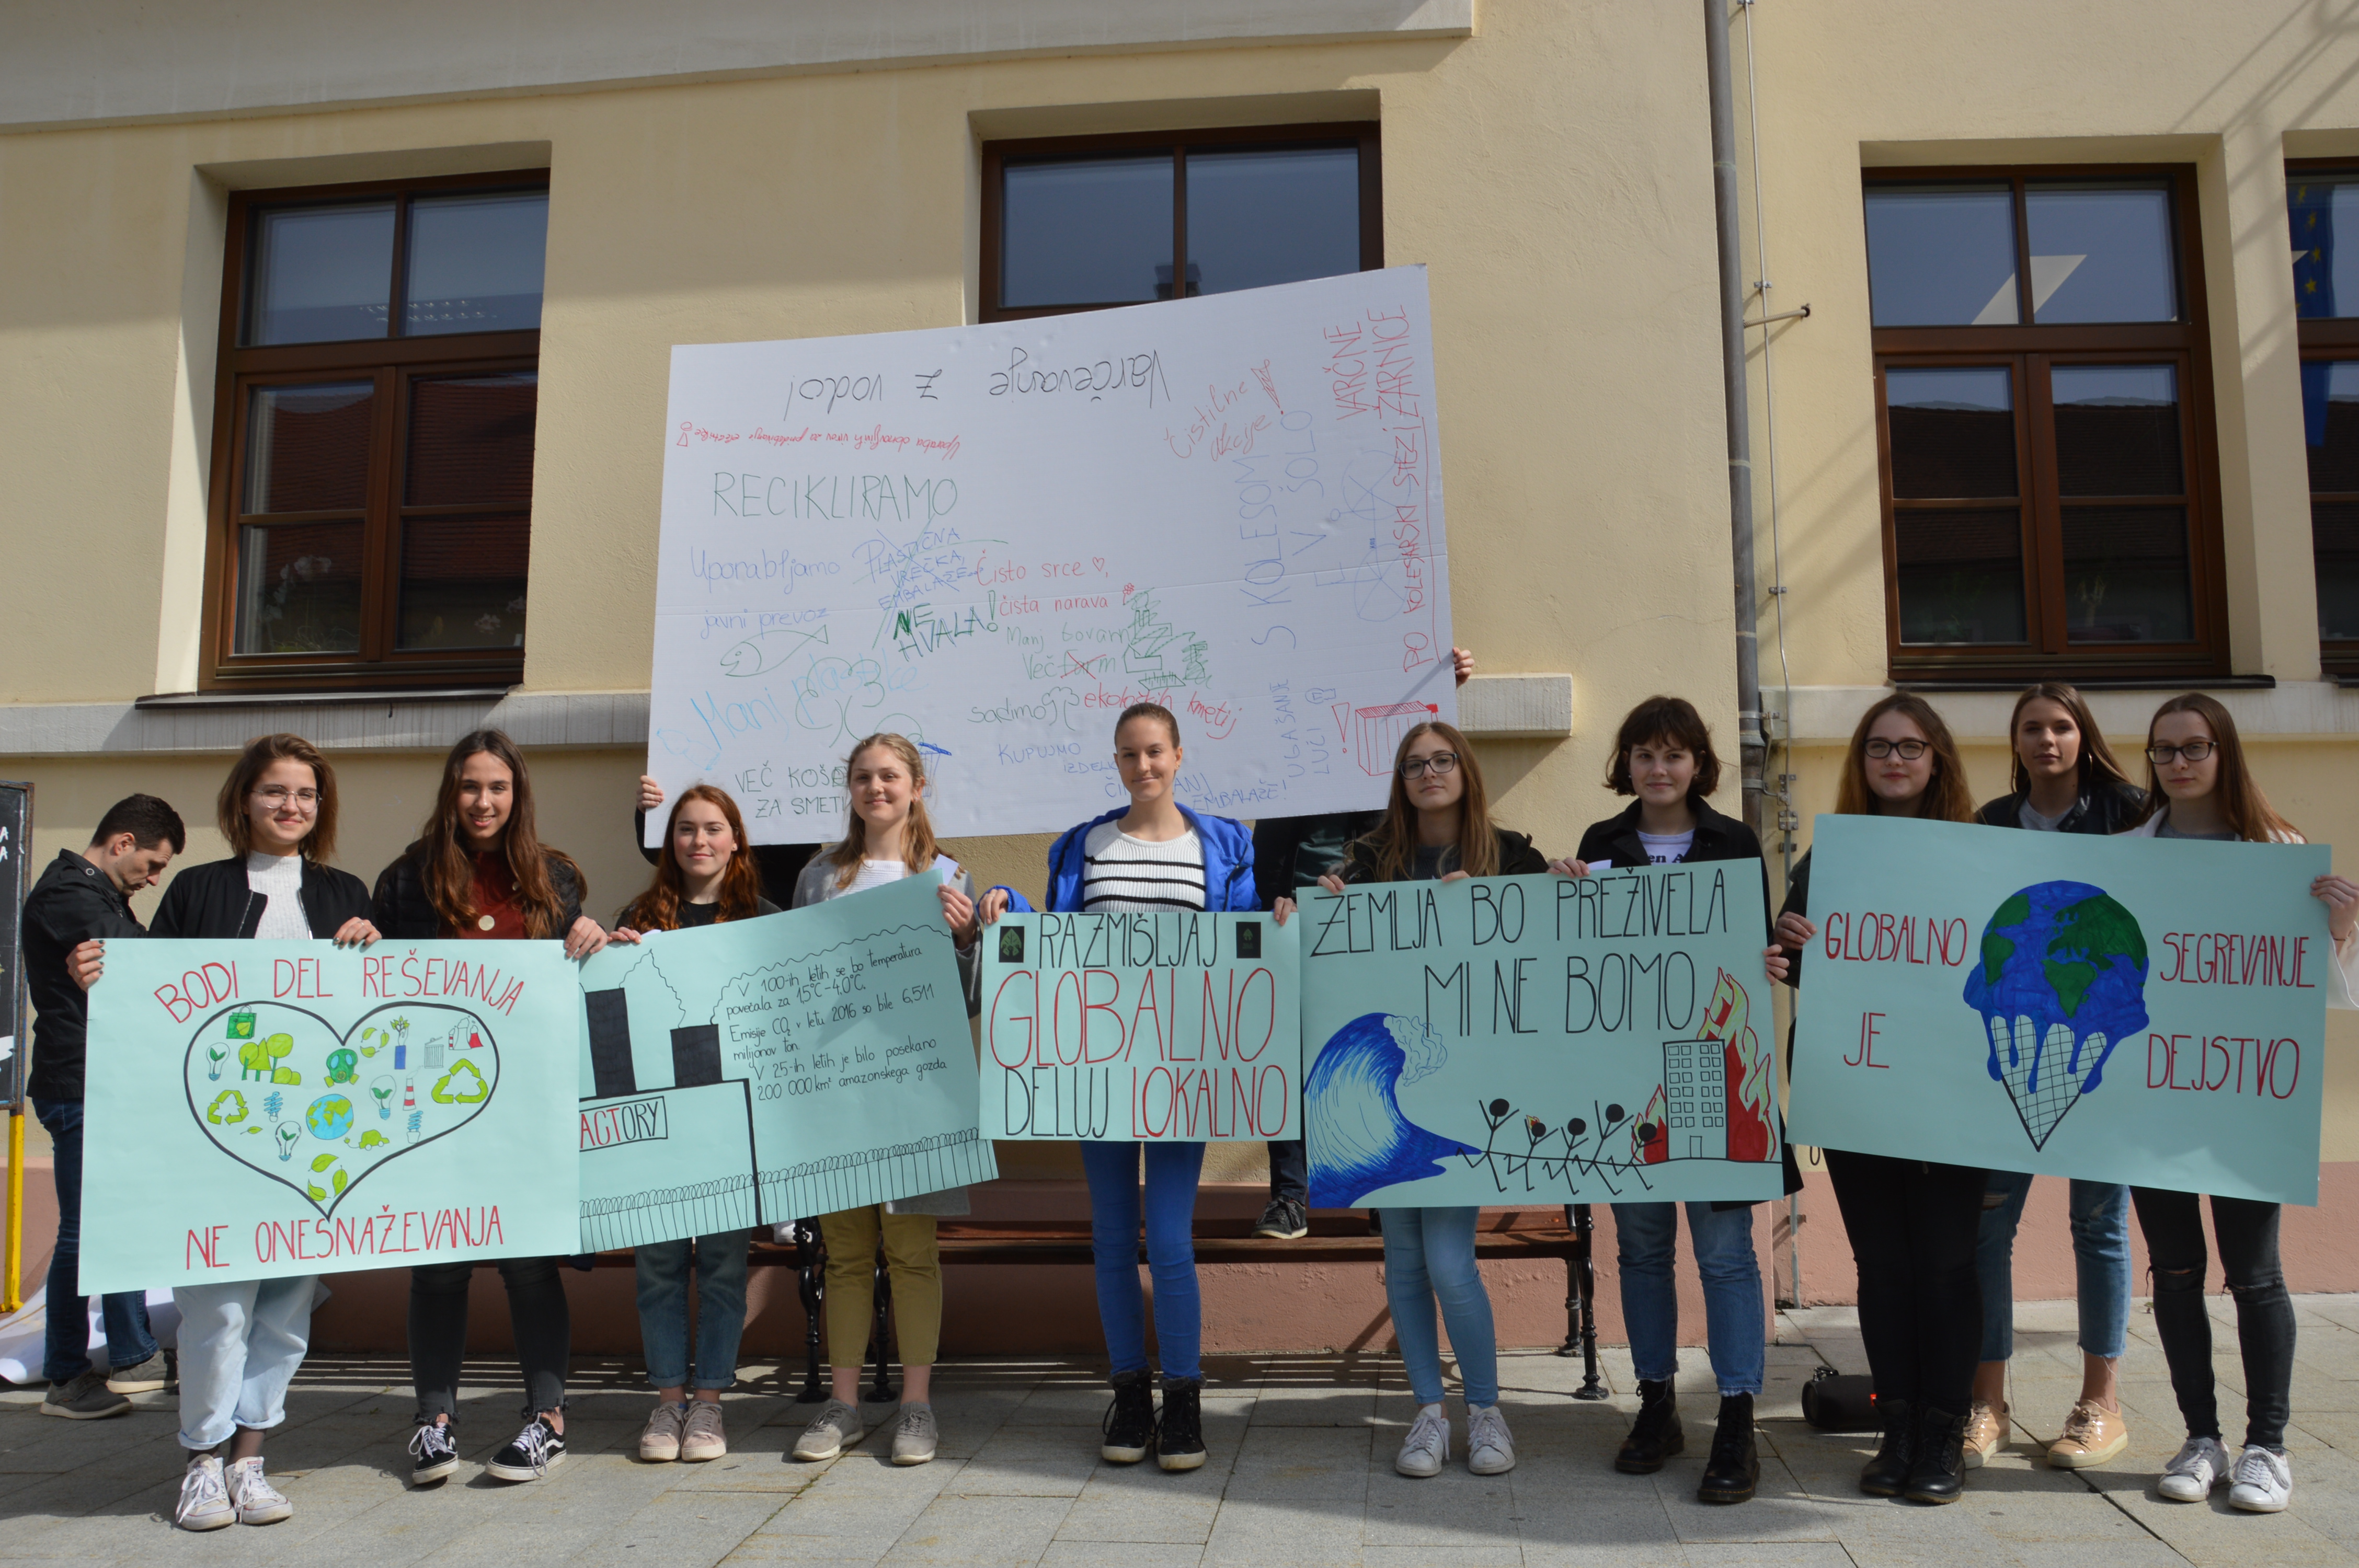 Na protestu v Brežicah opozorili na okoljsko in podnebno pravičnost